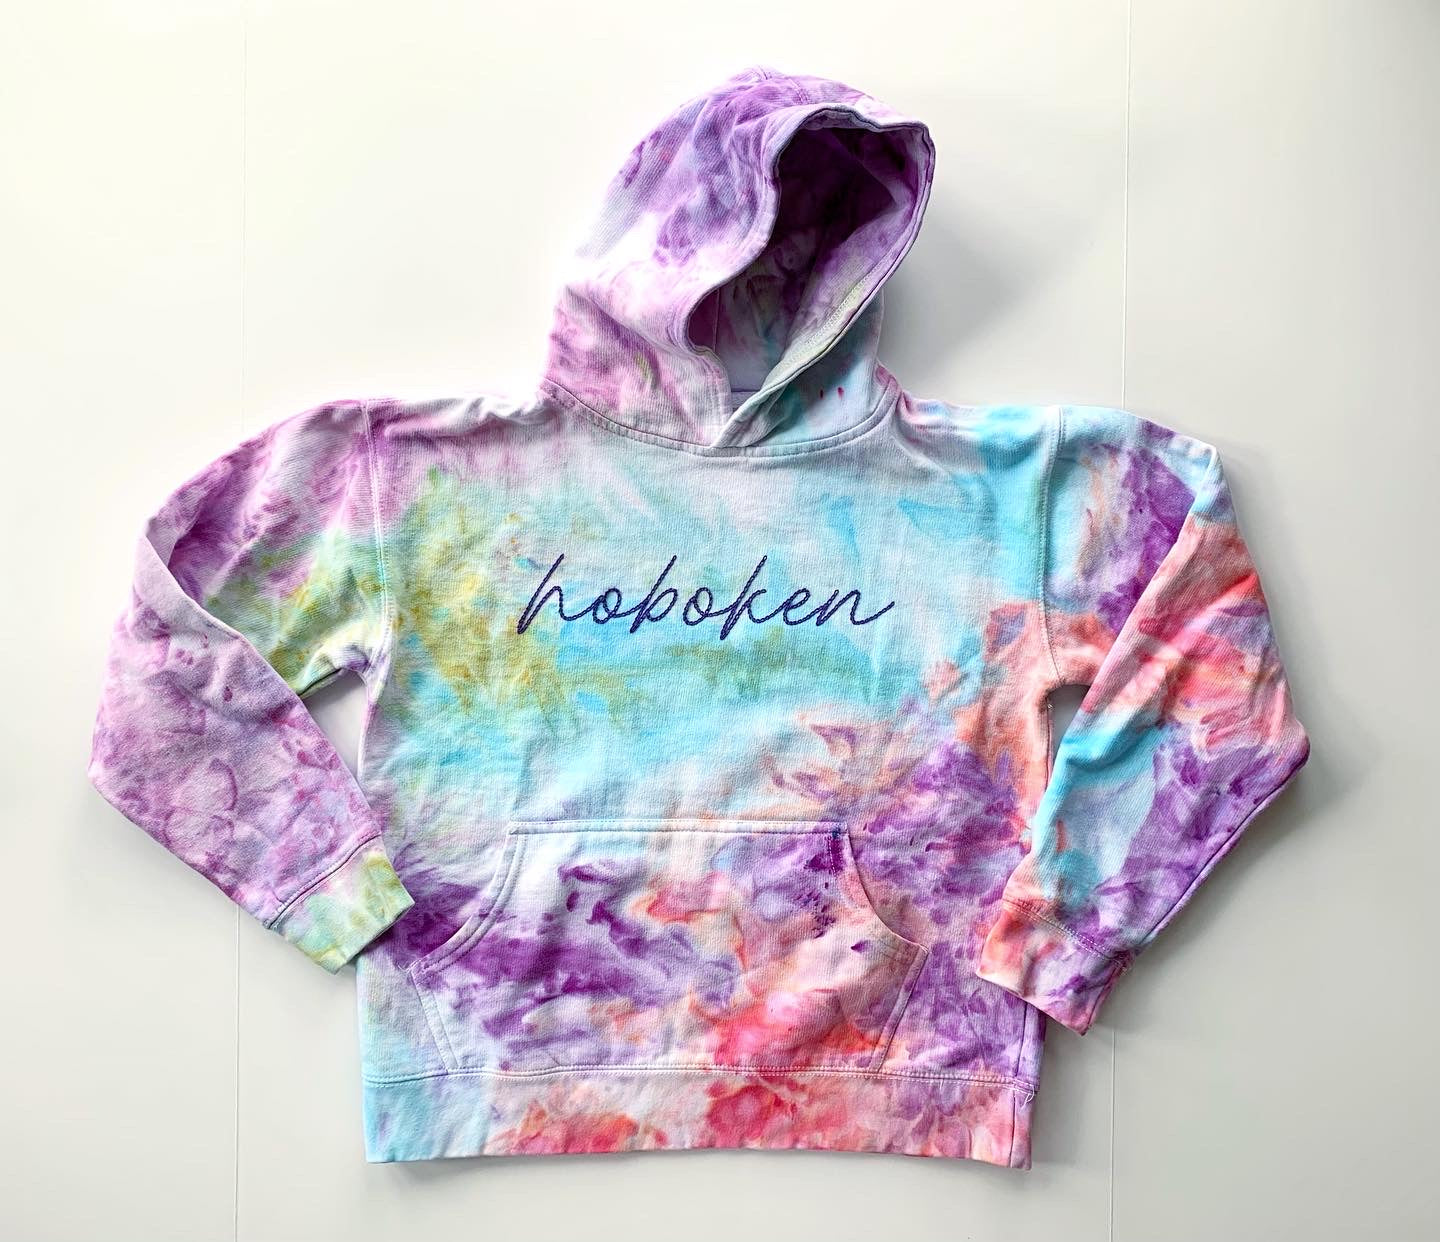 Hoboken Hand Embroidered and Ice Dyed Kids Sweatshirt